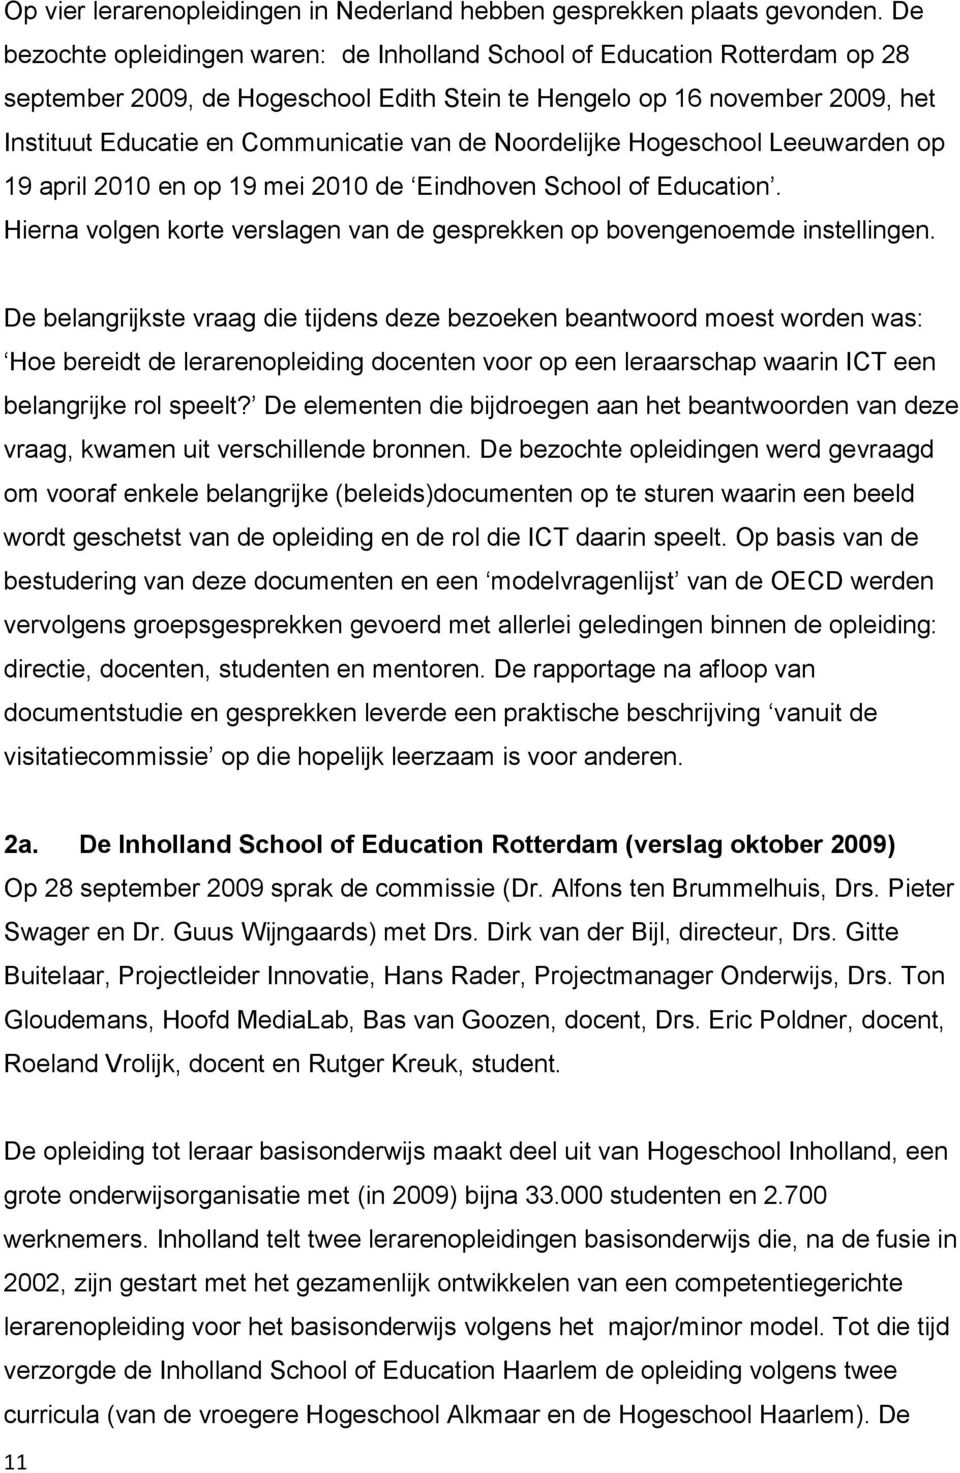 Noordelijke Hogeschool Leeuwarden op 19 april 2010 en op 19 mei 2010 de Eindhoven School of Education. Hierna volgen korte verslagen van de gesprekken op bovengenoemde instellingen.